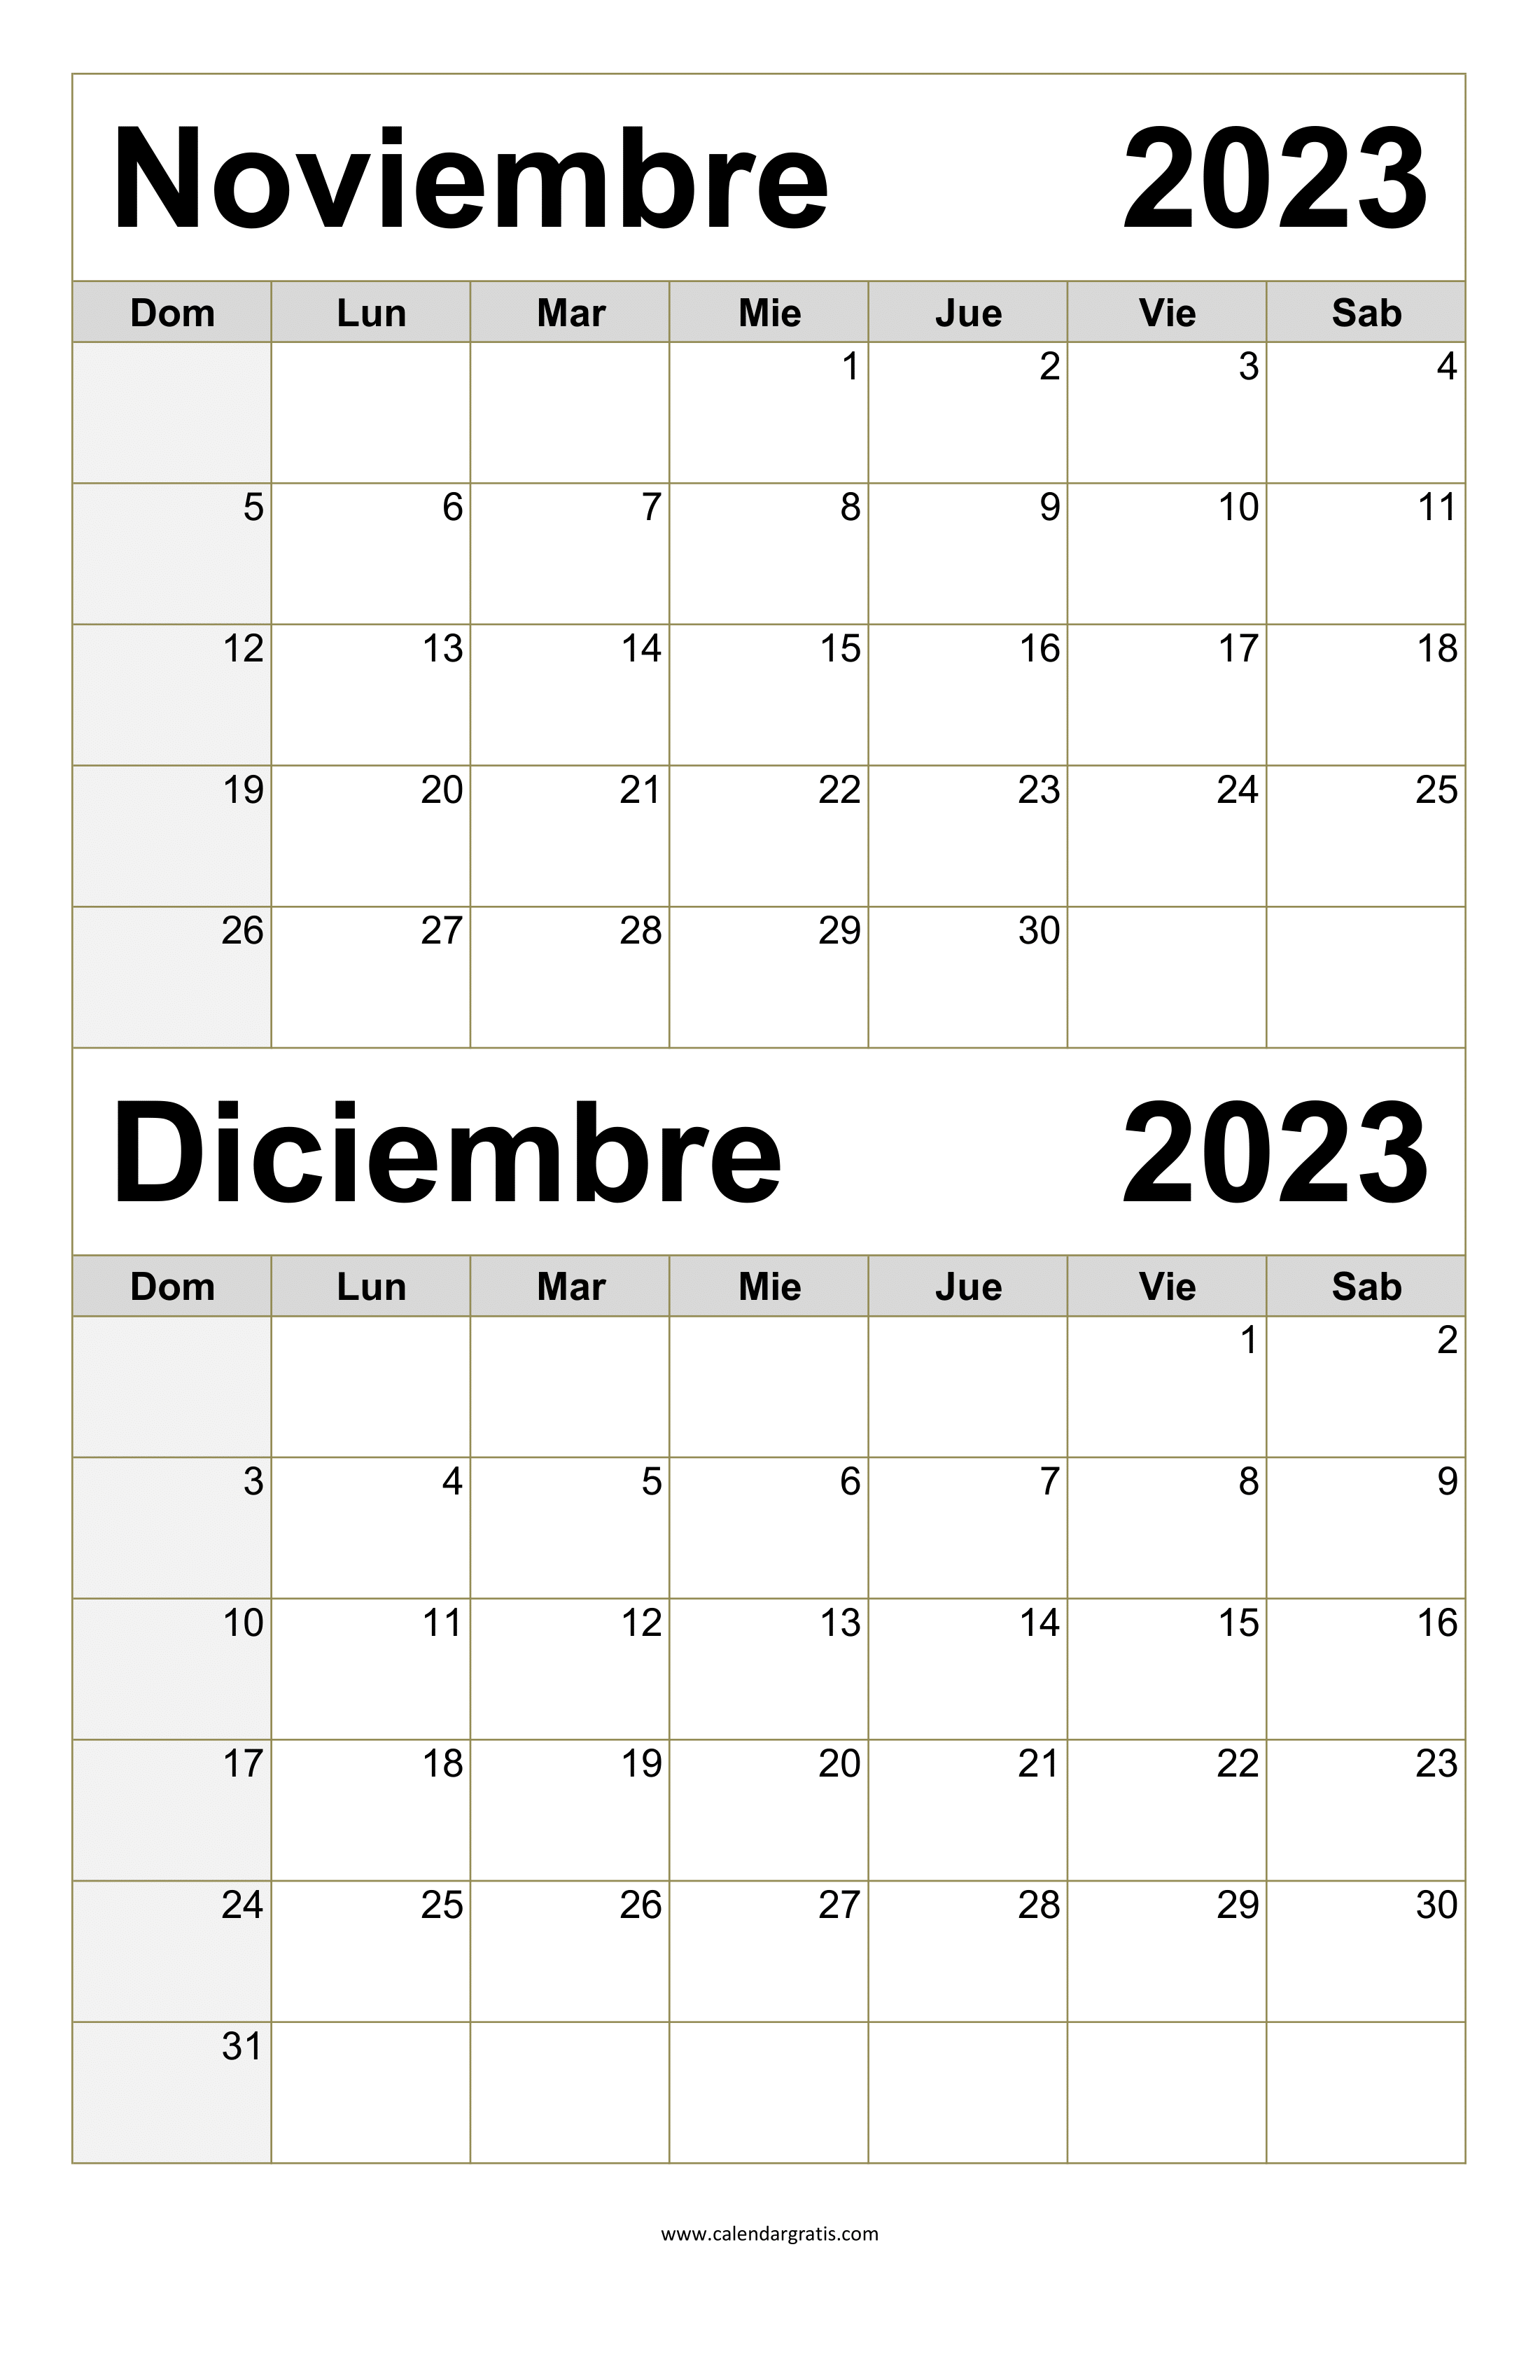 Descarga el calendario noviembre y diciembre 2023 para imprimir